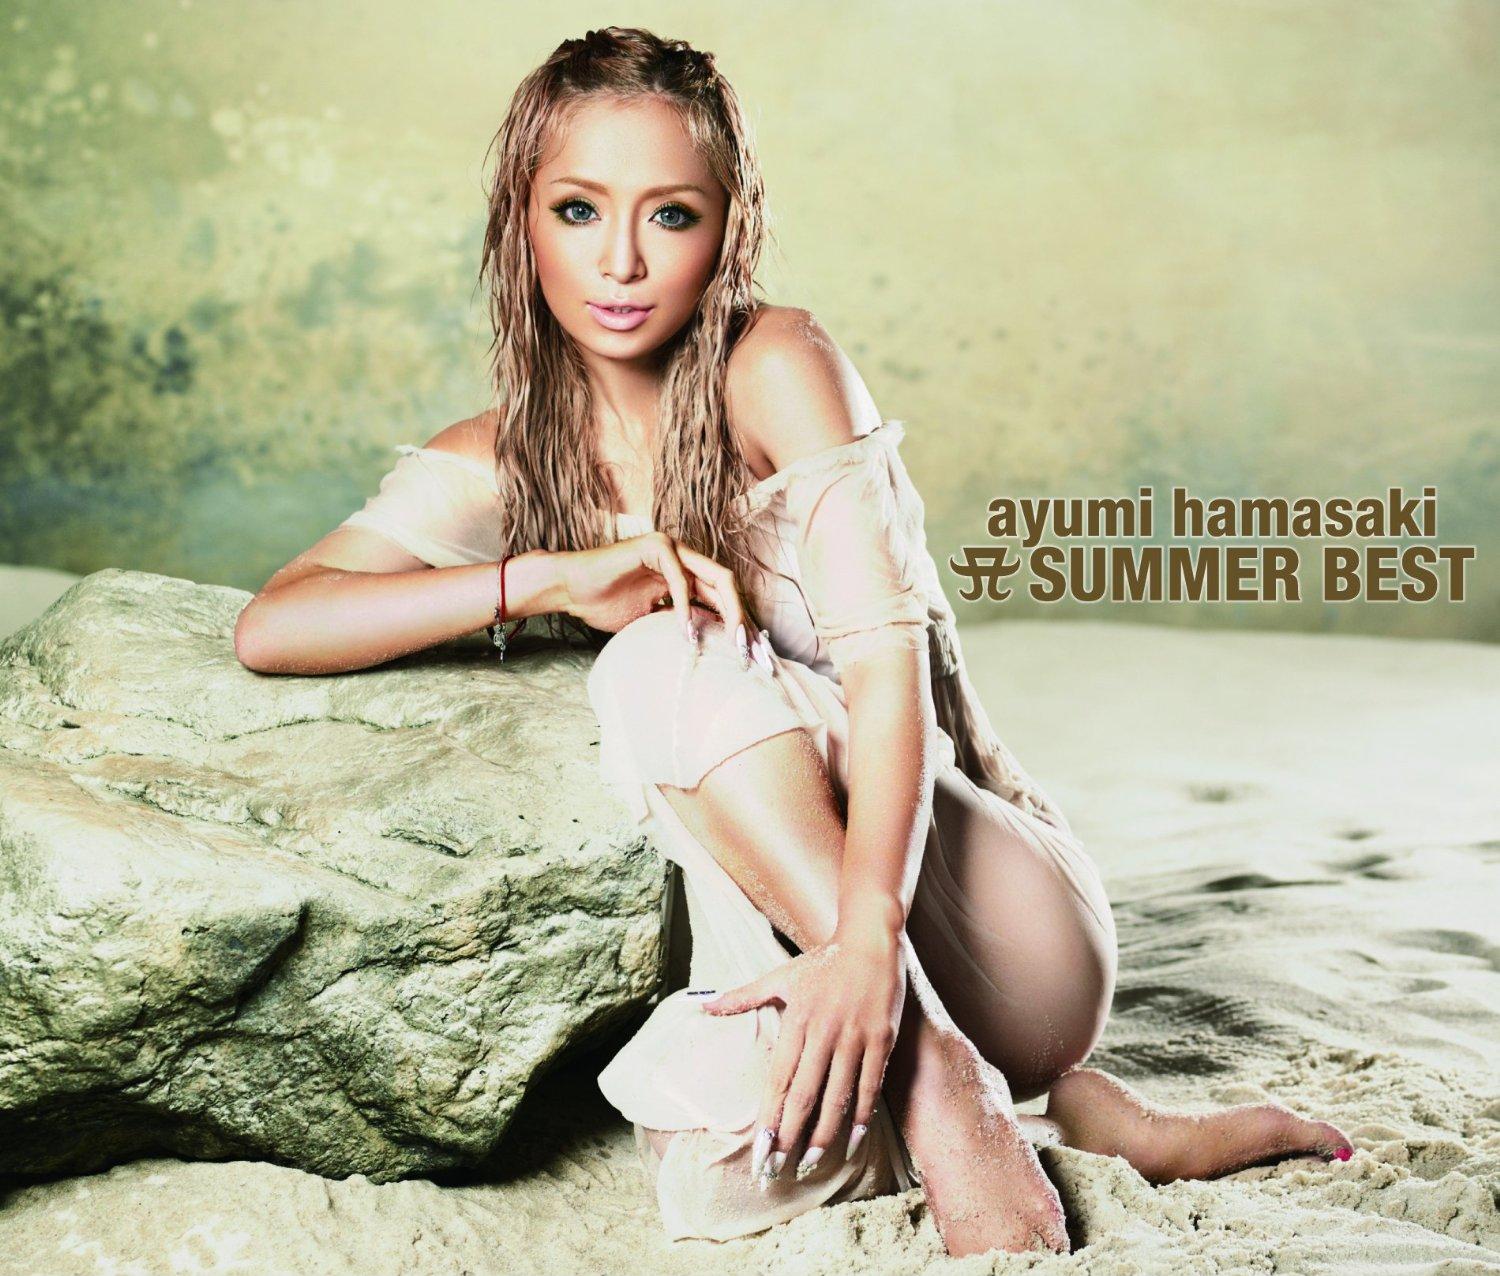 浜崎あゆみ (Ayumi Hamasaki) - A SUMMER BEST.jpg